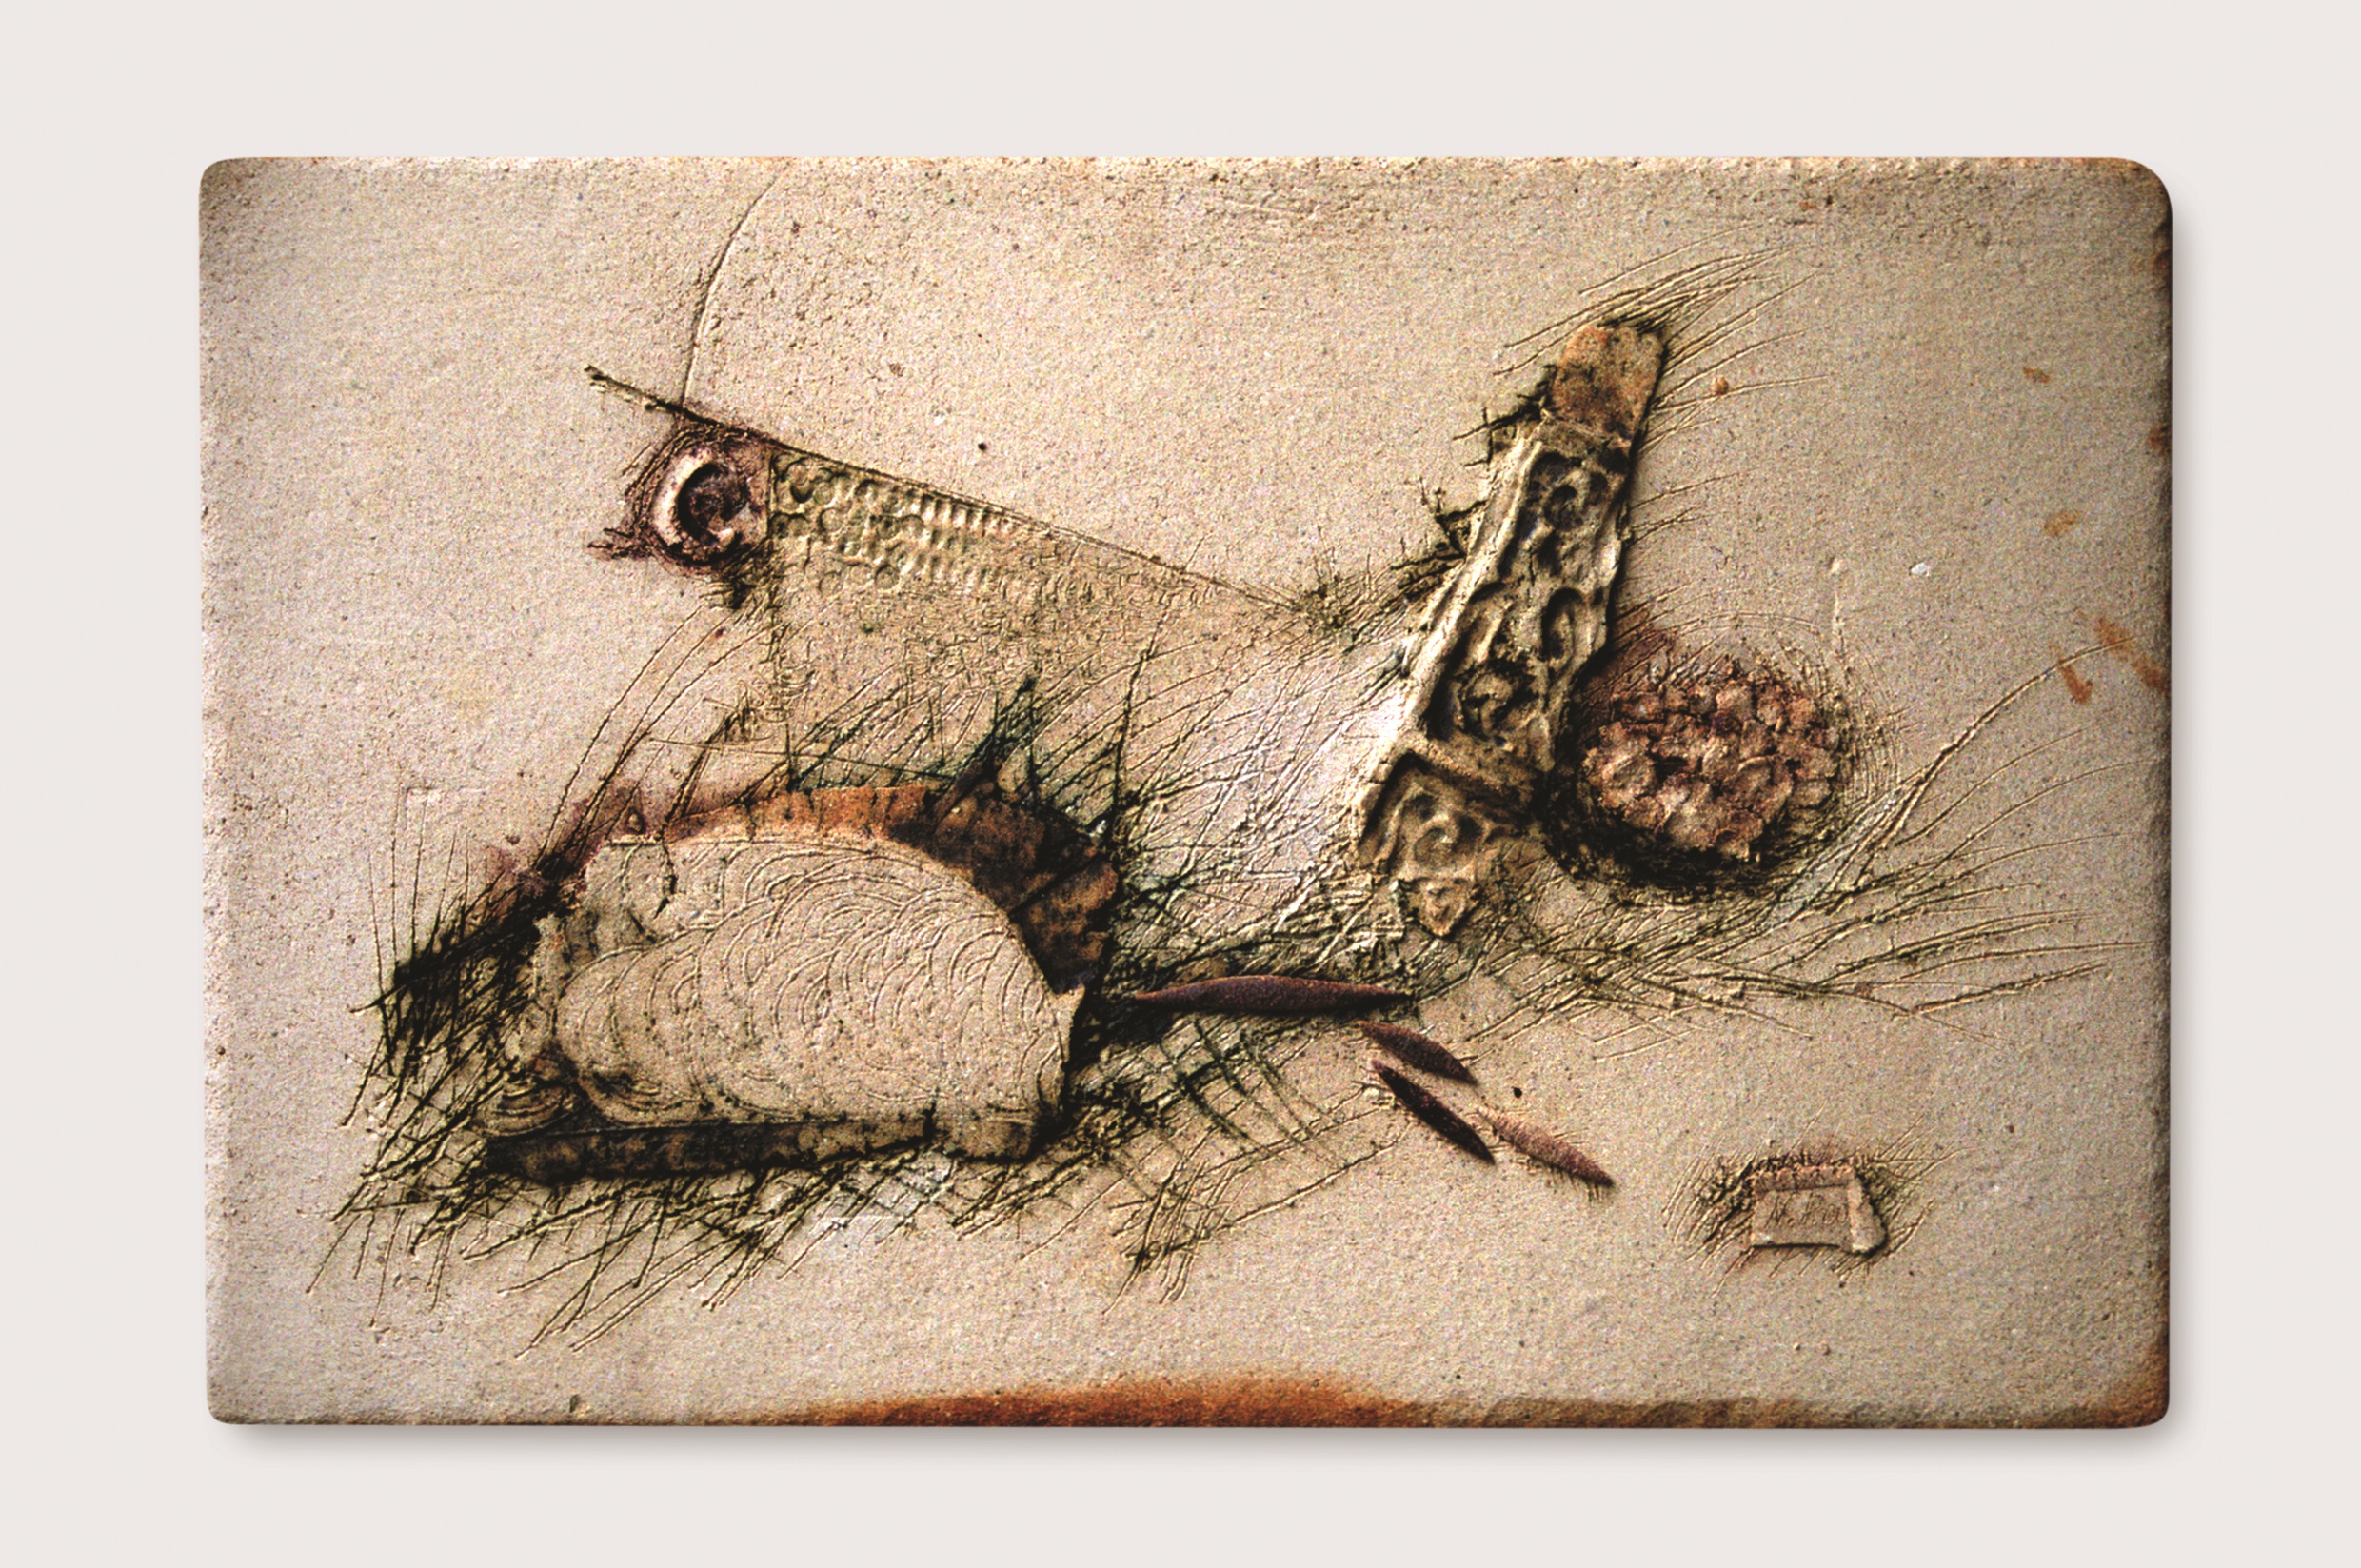 Moře- reliéf, 2000, francouzský šamot, kysličníky kovů